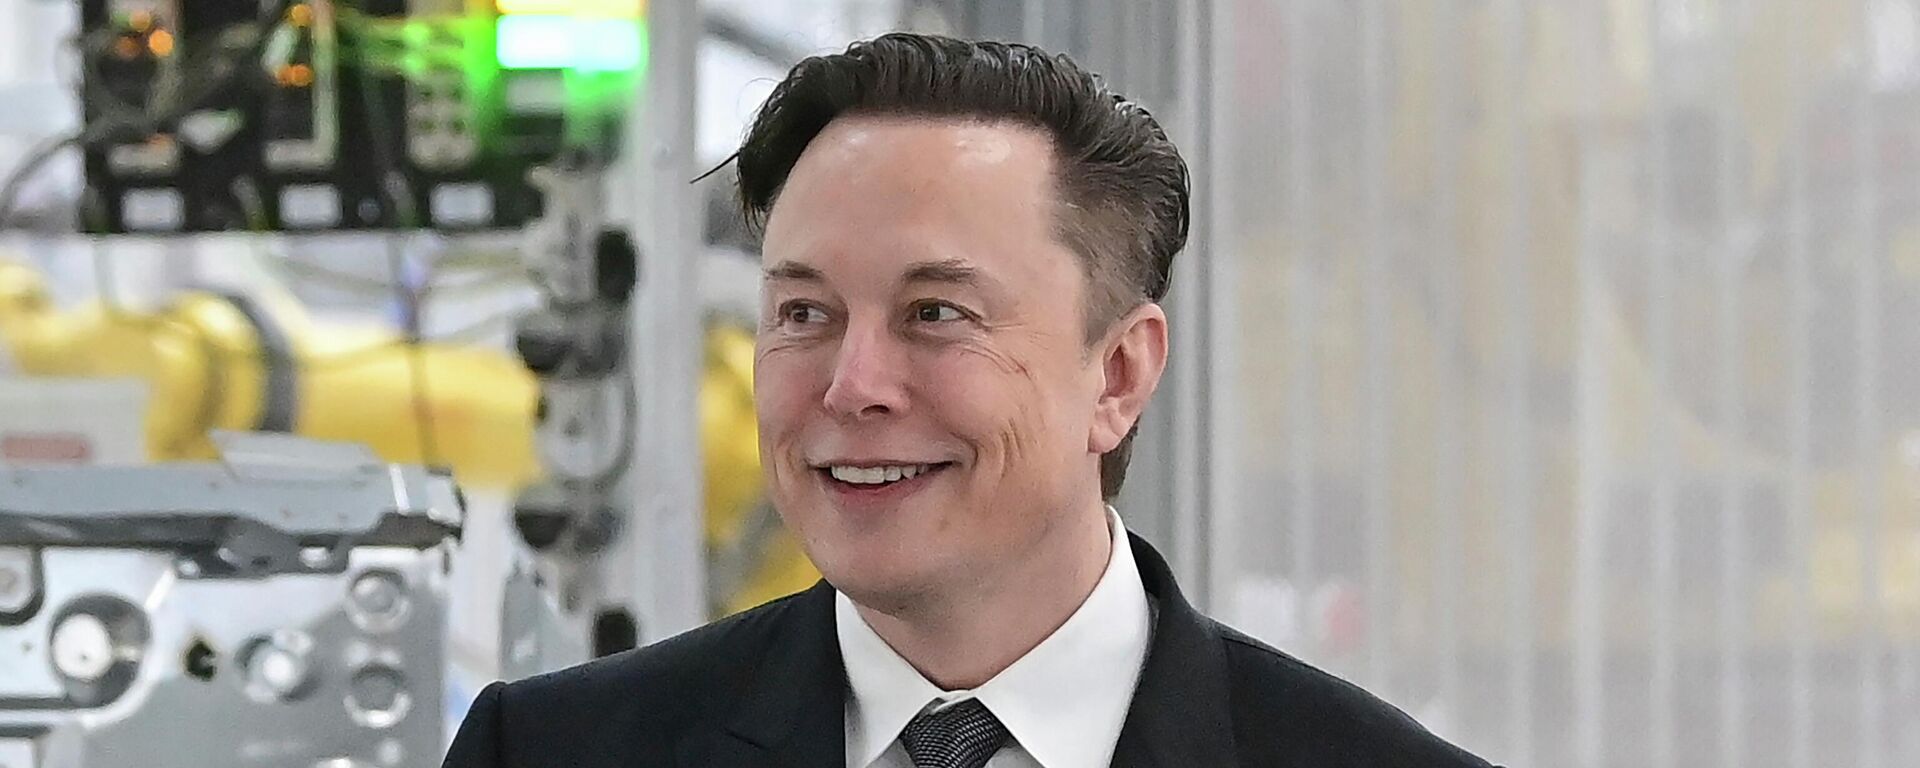  Tesla CEO Elon Musk attends the opening of the Tesla factory Berlin Brandenburg in Gruenheide, Germany on March 22, 2022. - Sputnik International, 1920, 19.11.2022